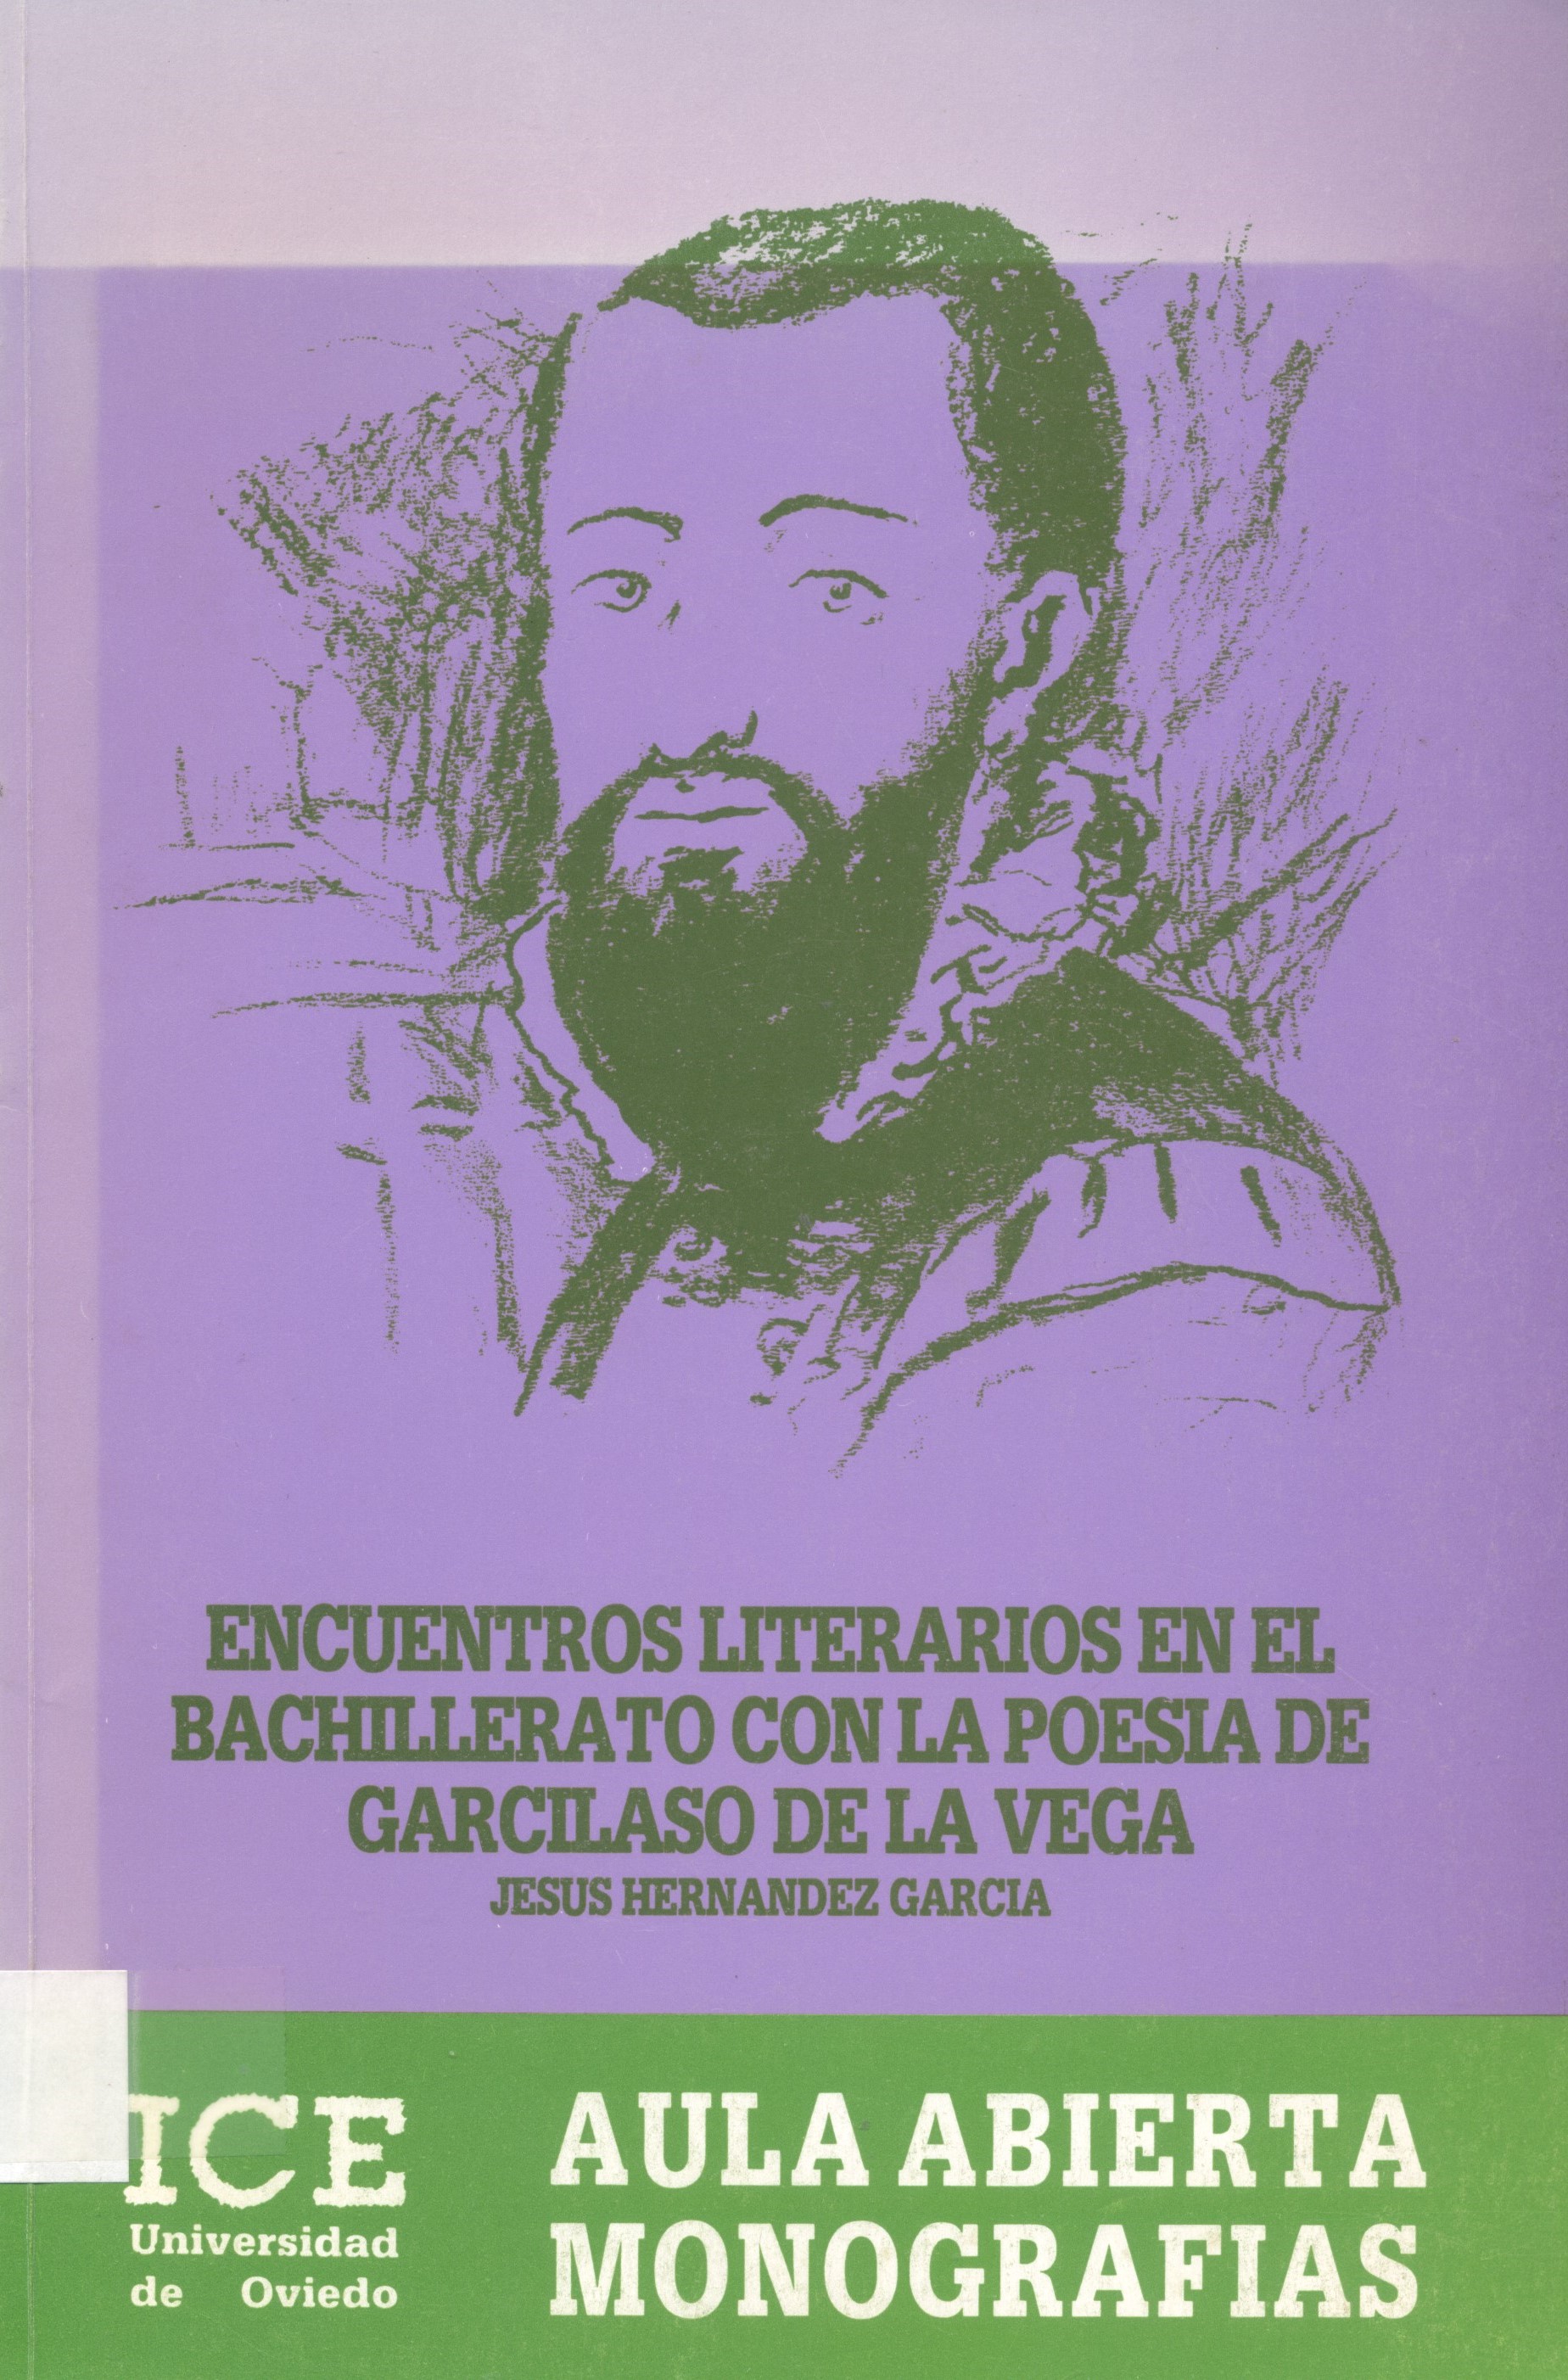 Imagen de portada del libro Encuentros literarios en el bachillerato con la poesía de Garcilaso de la Vega